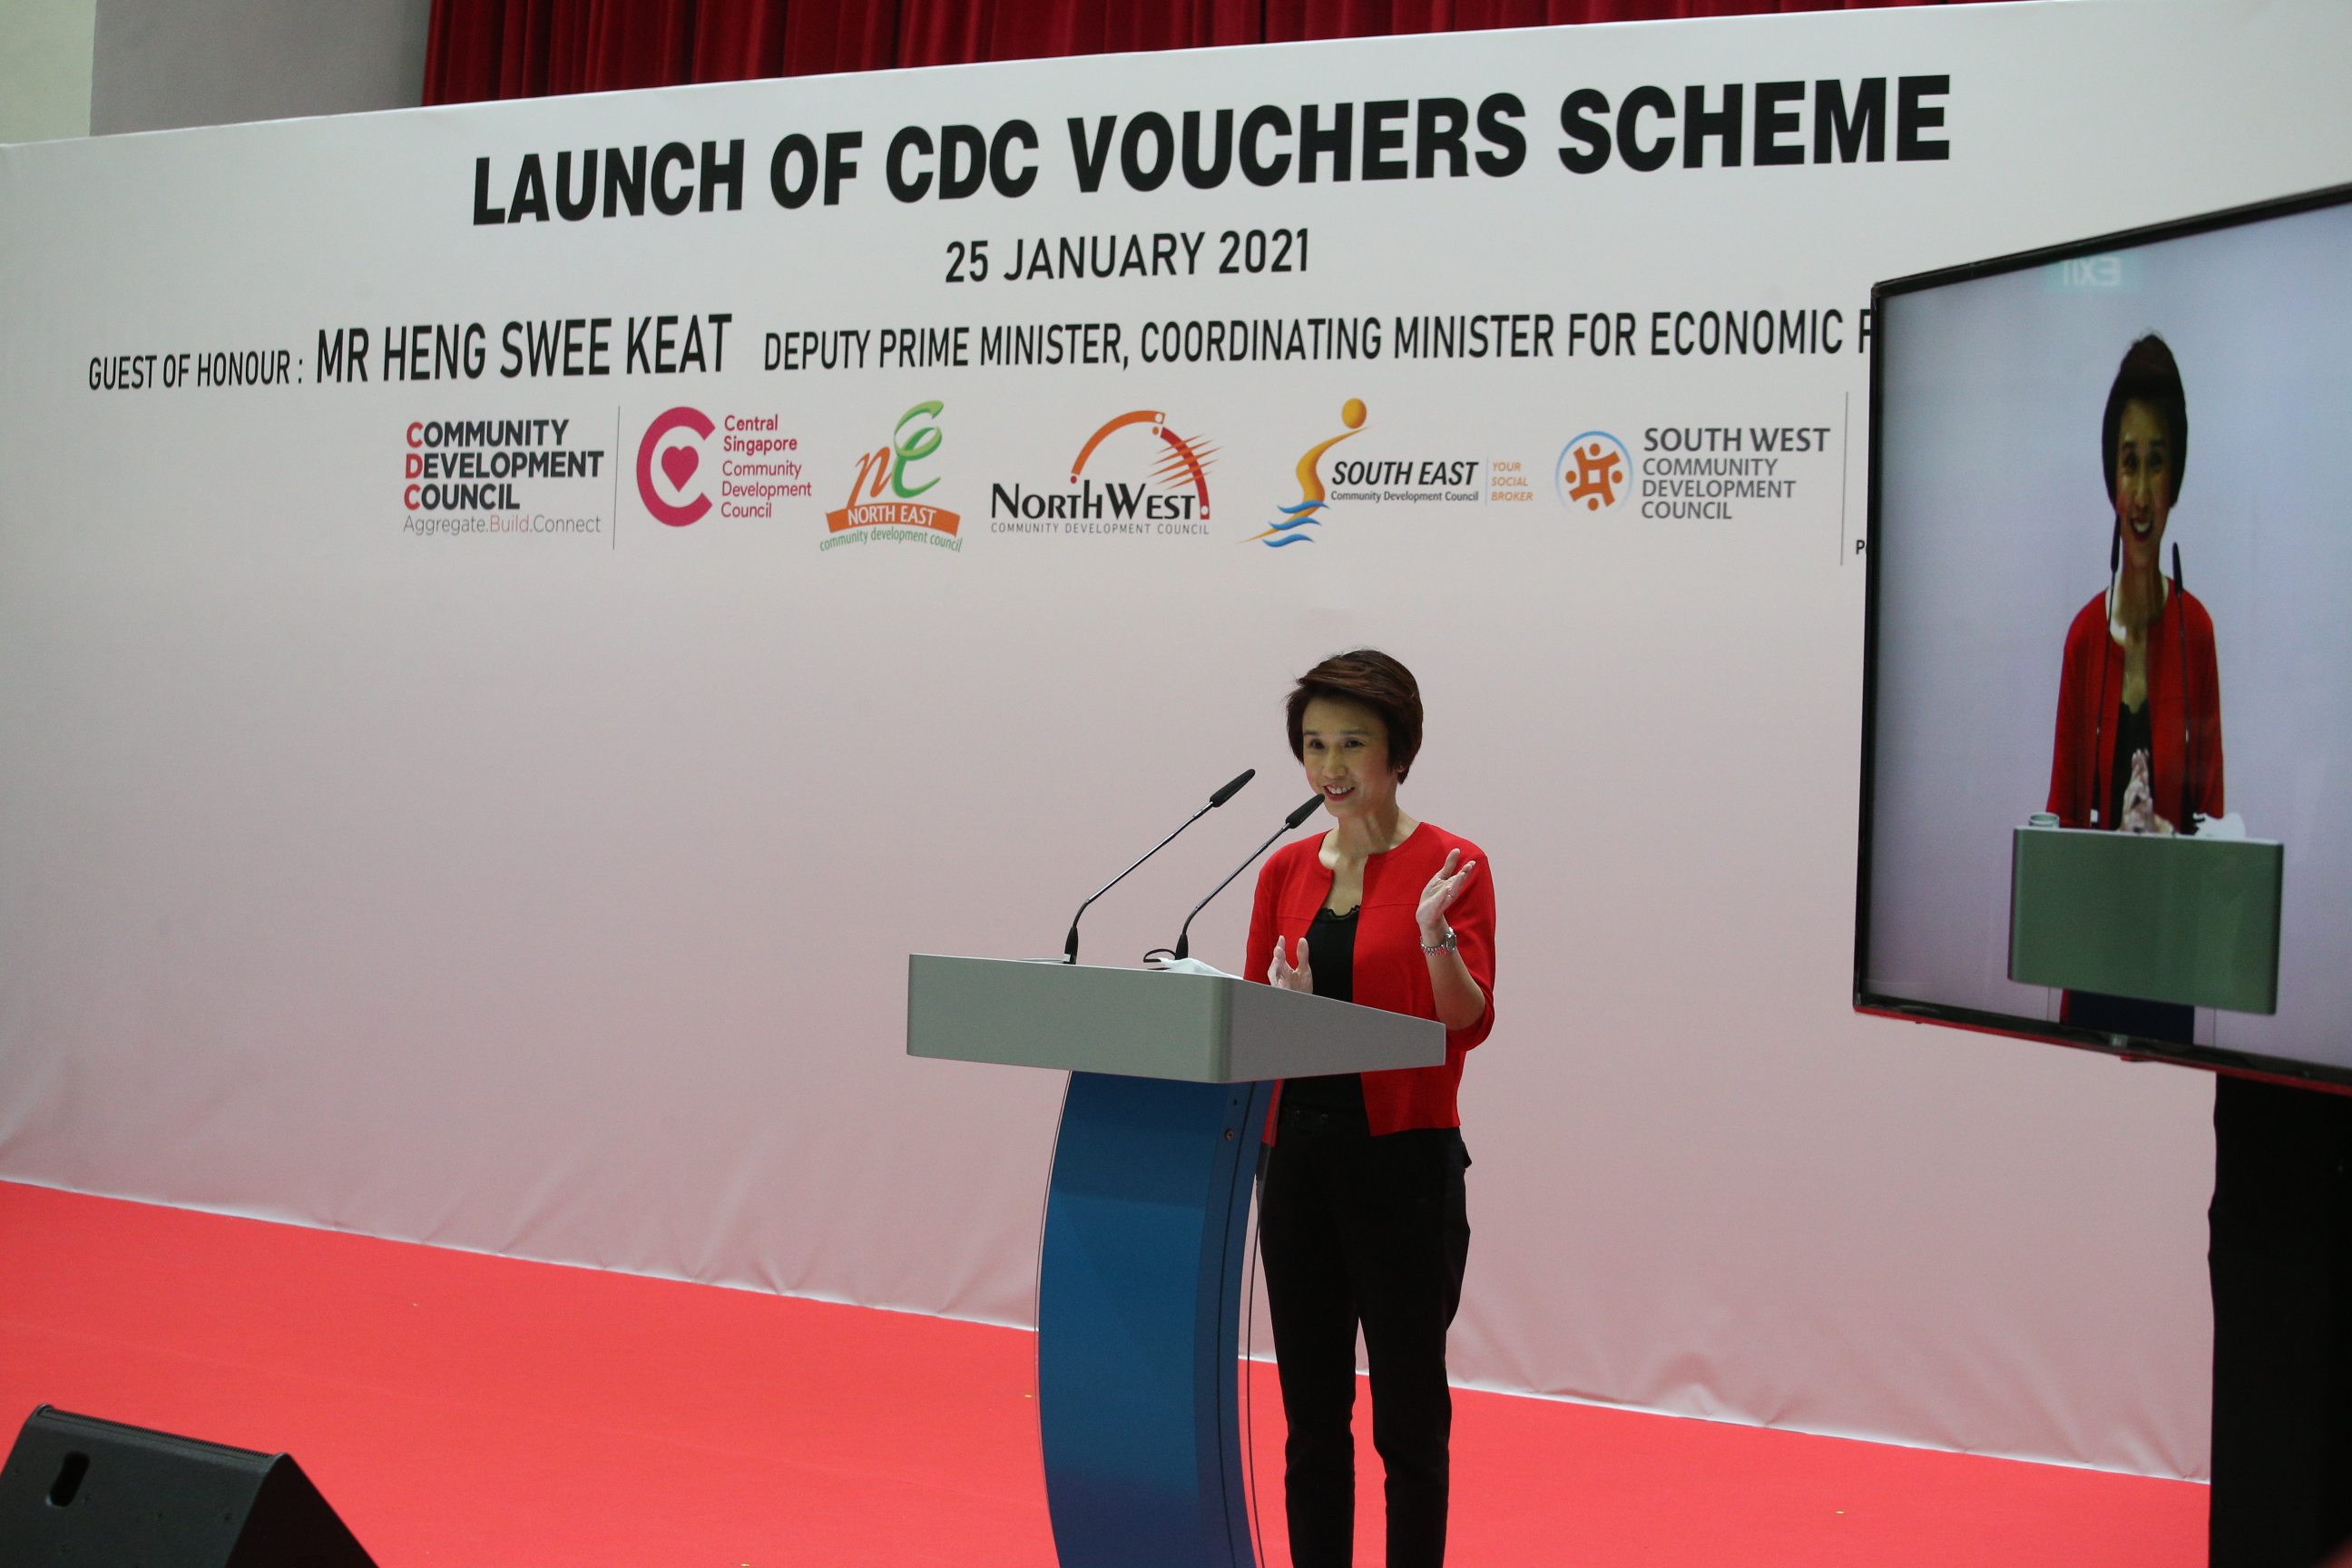 Launch of CDC Vouchers Scheme (Tranche 2)